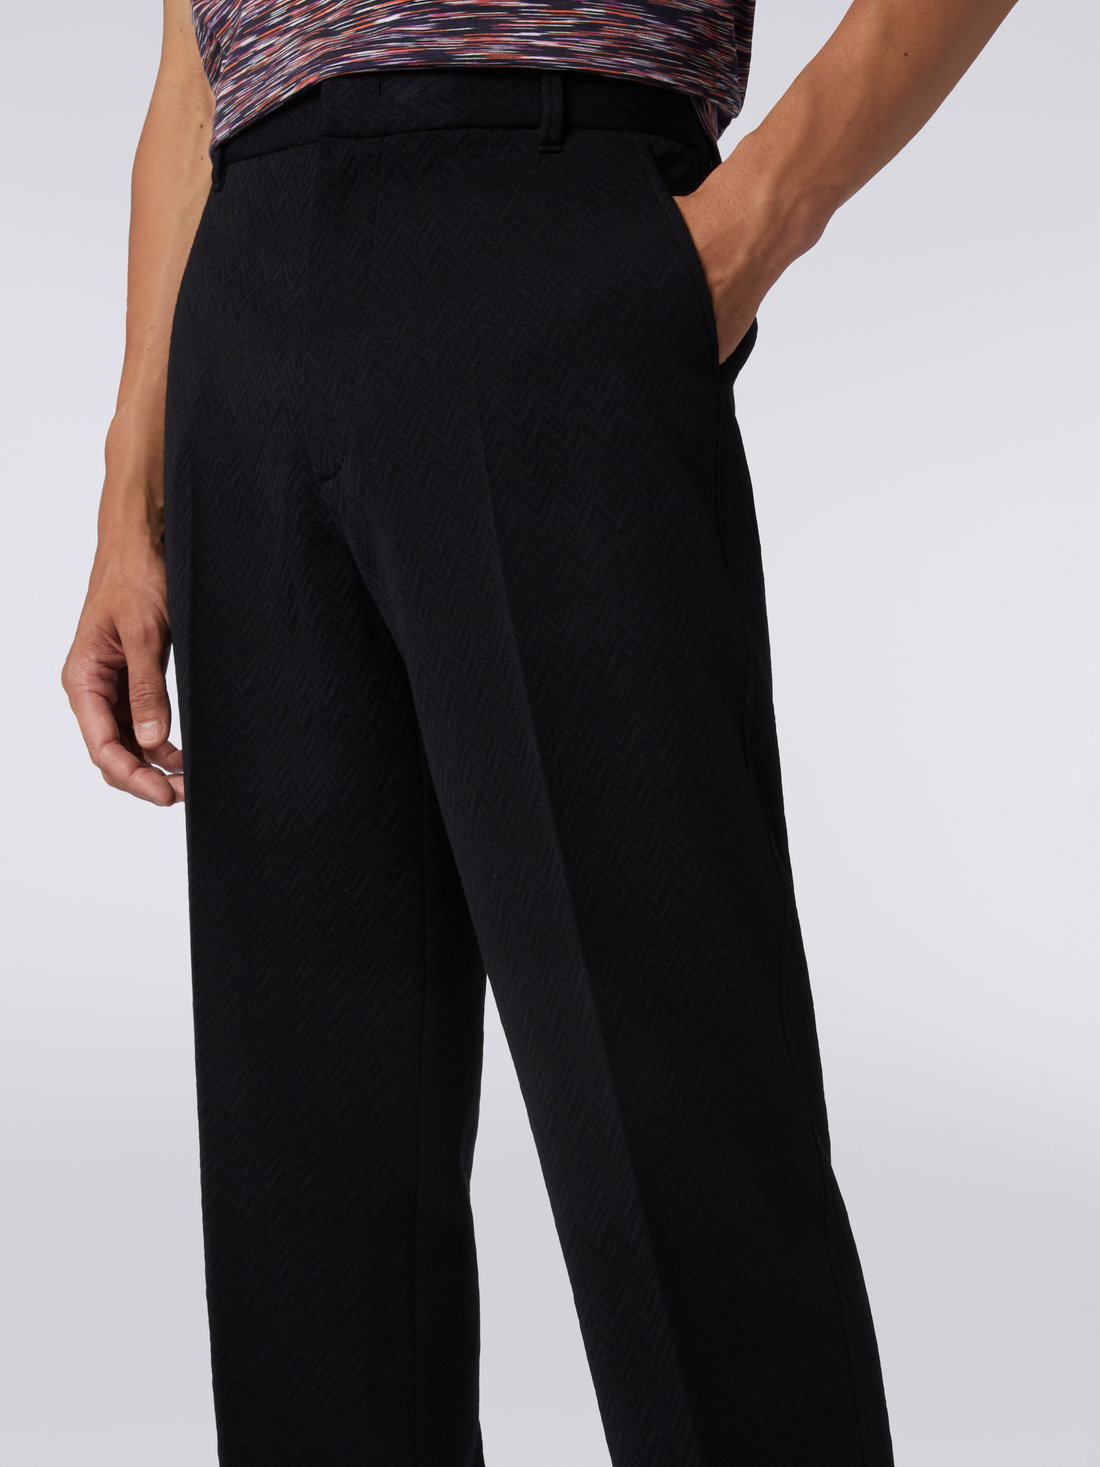 Wool blend chevron trousers, Black    - US23WI05BT005U93911 - 4